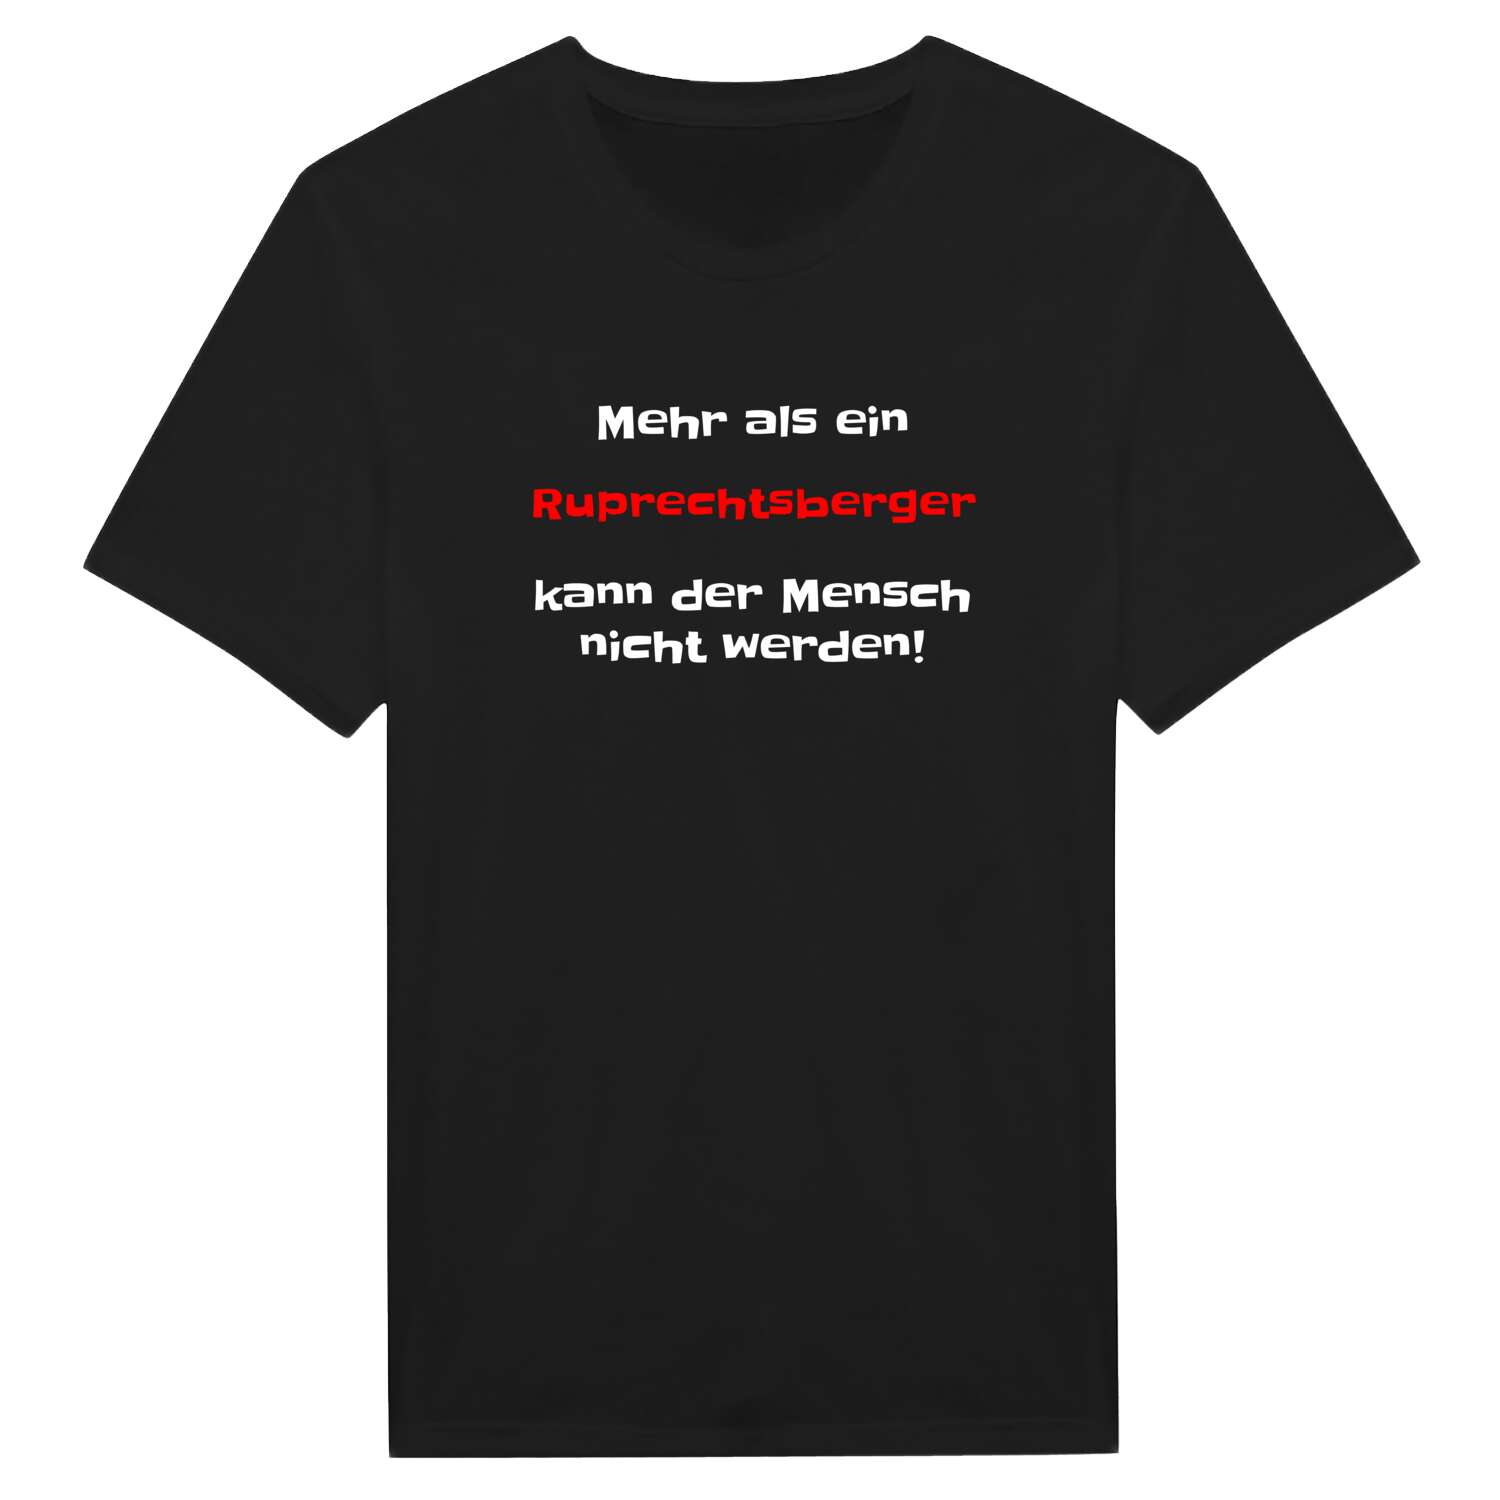 Ruprechtsberg T-Shirt »Mehr als ein«